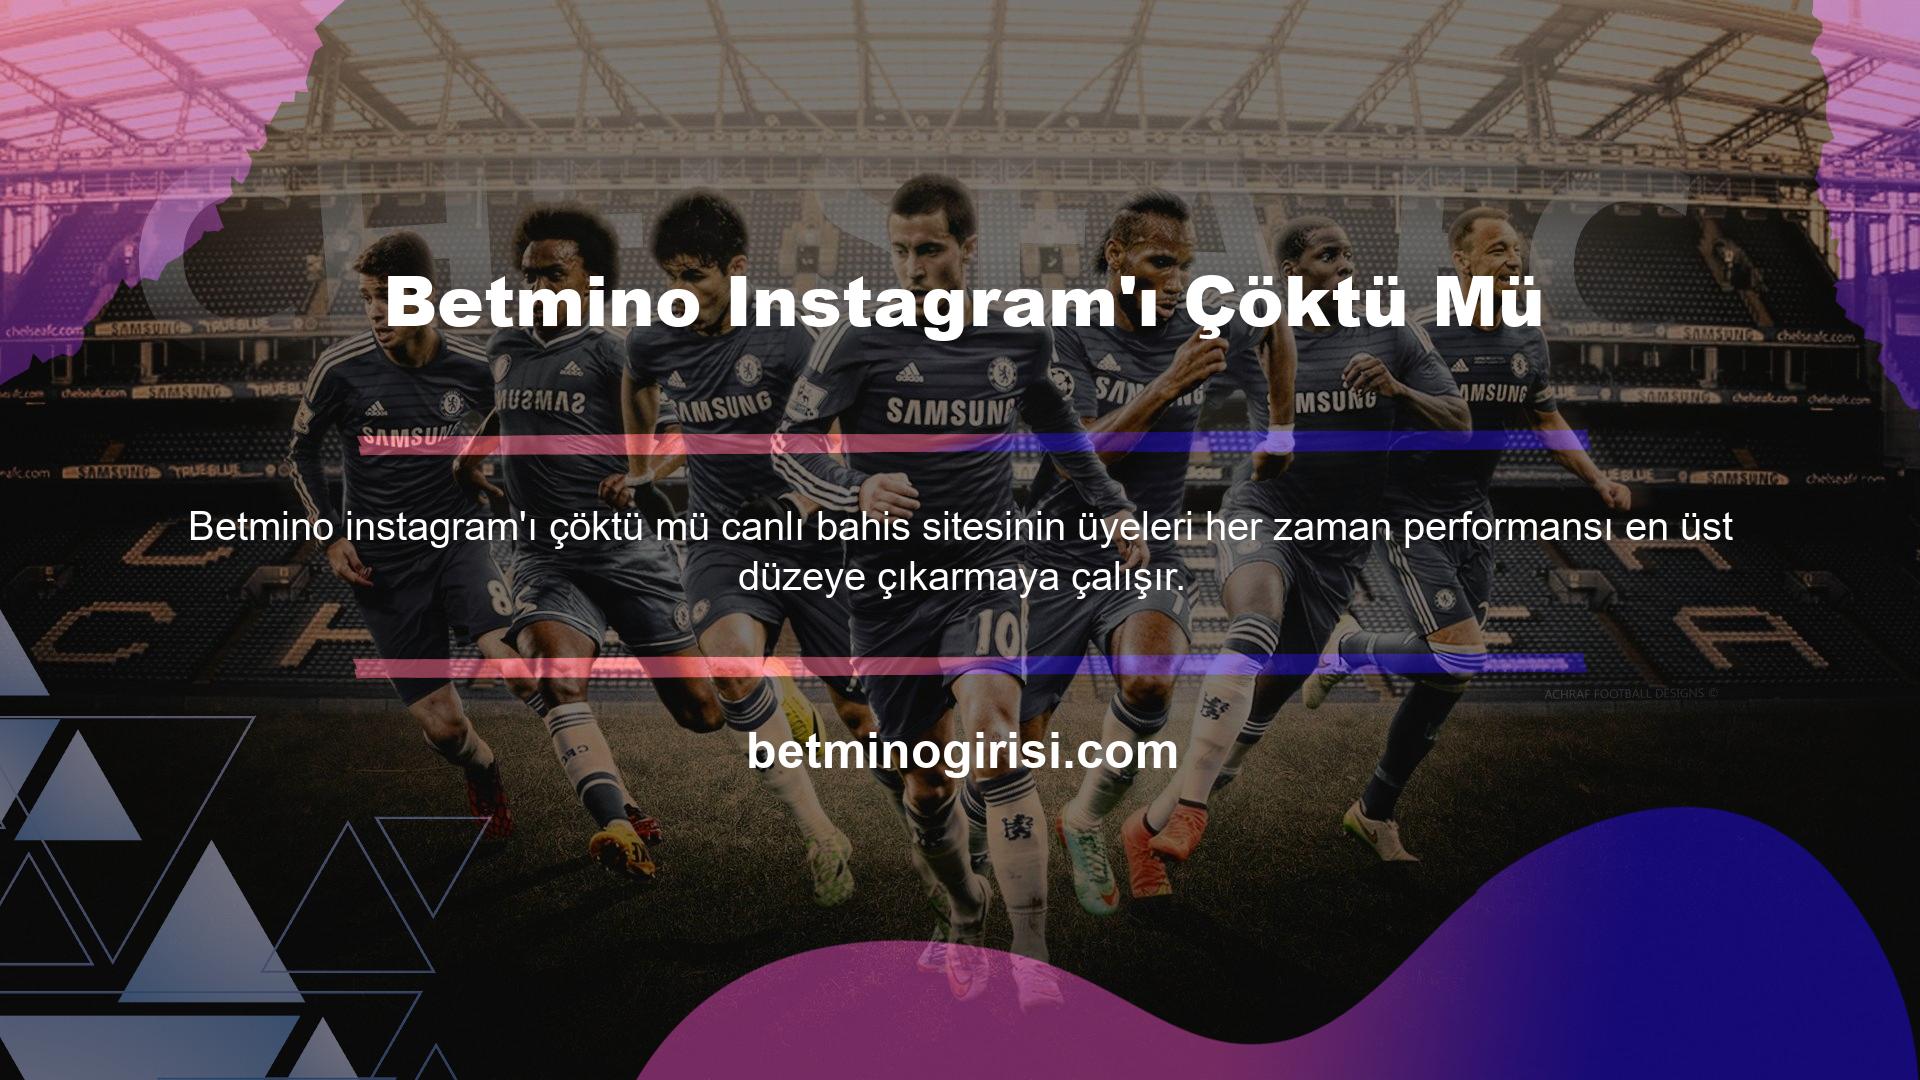 Betmino Instagram hesabı da yüksek profili nedeniyle dikkat çekiyor